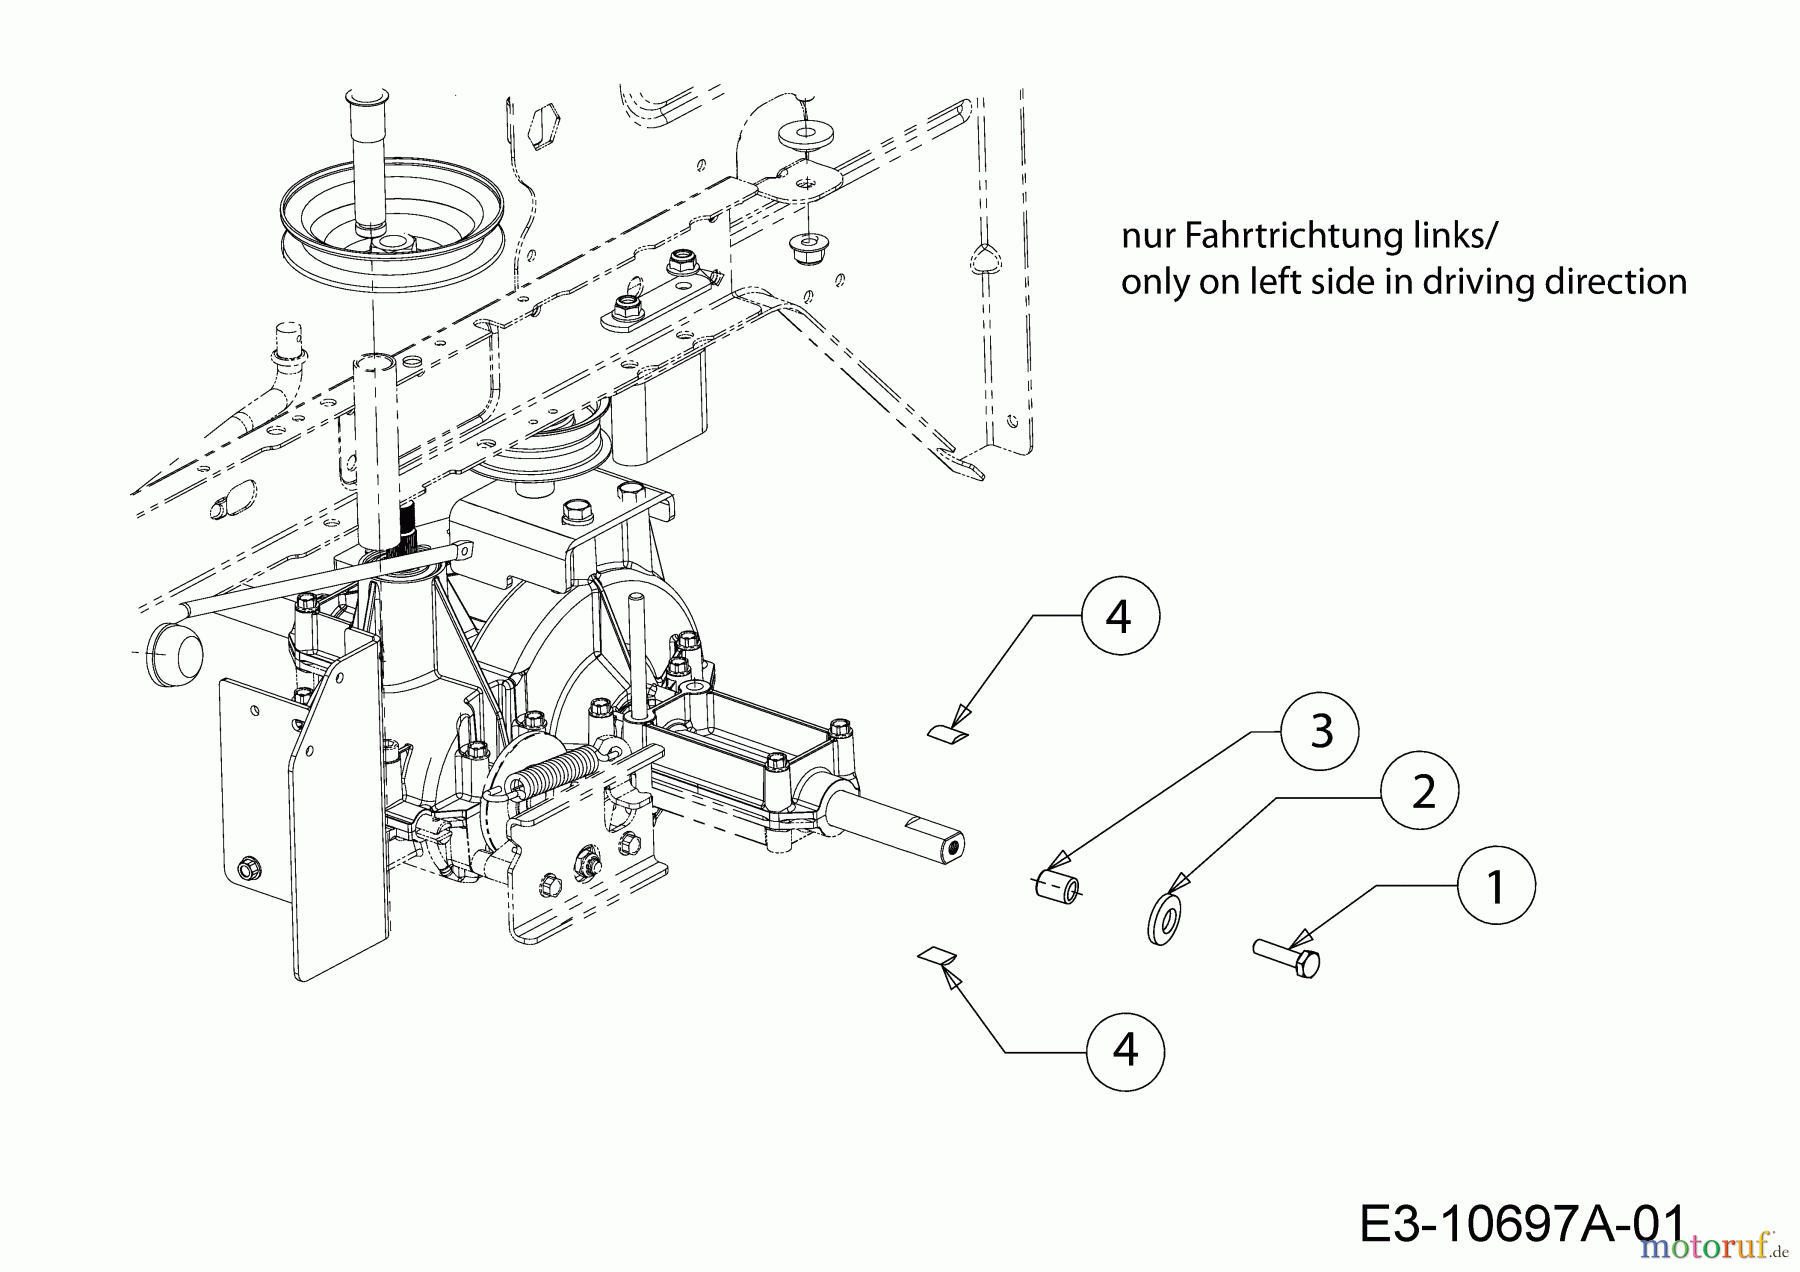  Lux Tools Rasentraktoren B-RT-165/92 13IN77SE694  (2018) Kit, Vorbereitung Montage Schneeketten